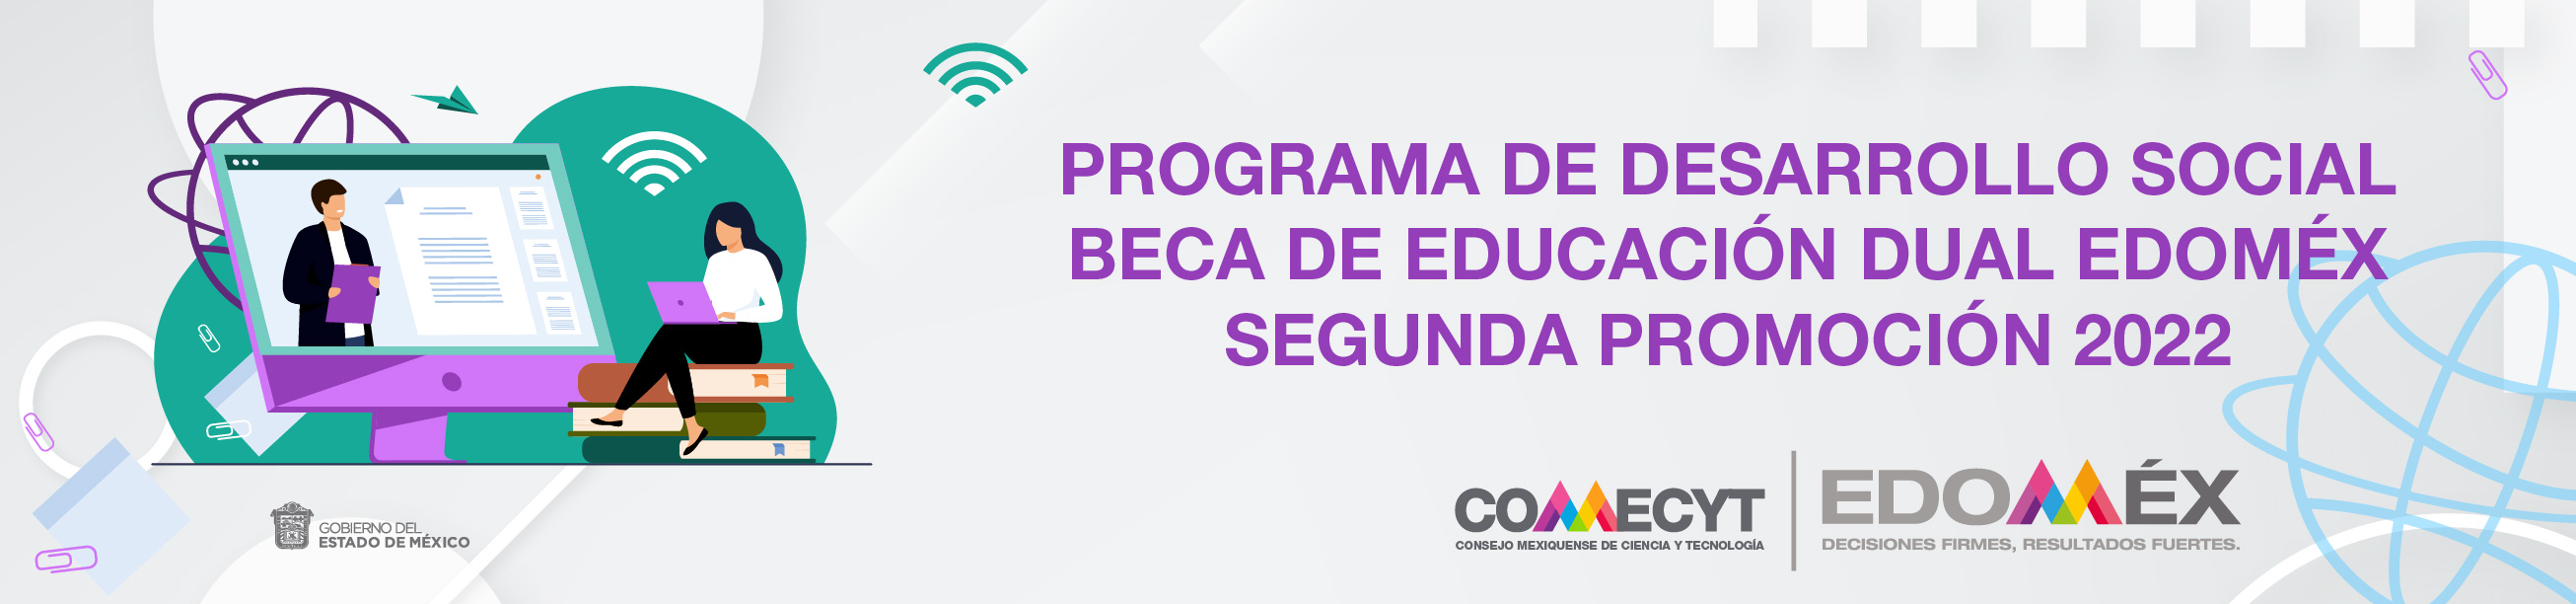 BECA DE EDUCACION DUAL EDOMEX SEGUNDA PROMOCION 2022